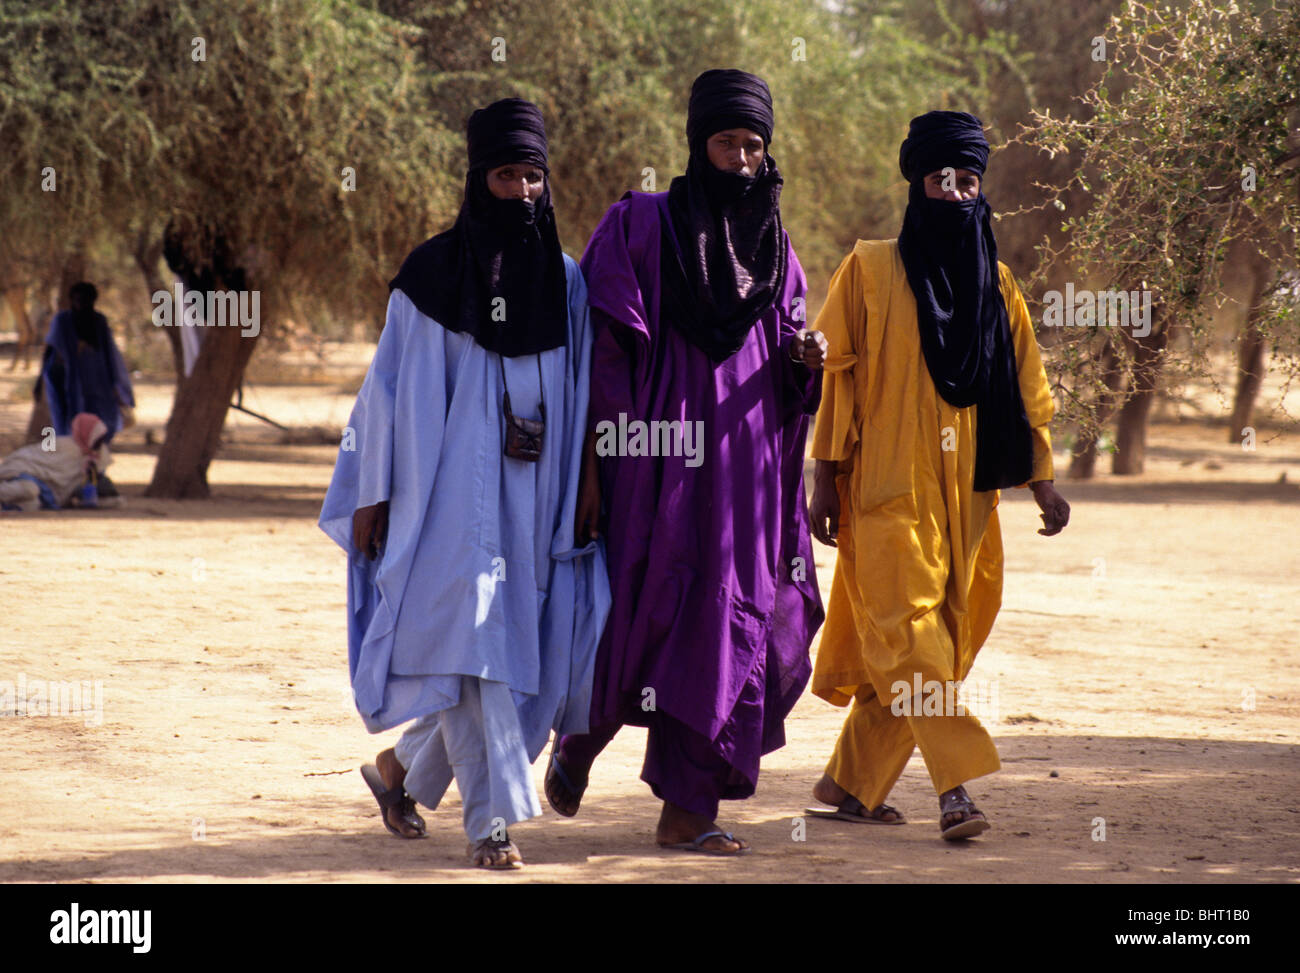 Akadaney, zentralen Niger, Westafrika. Fulani Nomaden. Männer wandern, Mund Verhüllt in Tuareg Mode. Jährliche Zusammenkunft, die Gerewol. Stockfoto